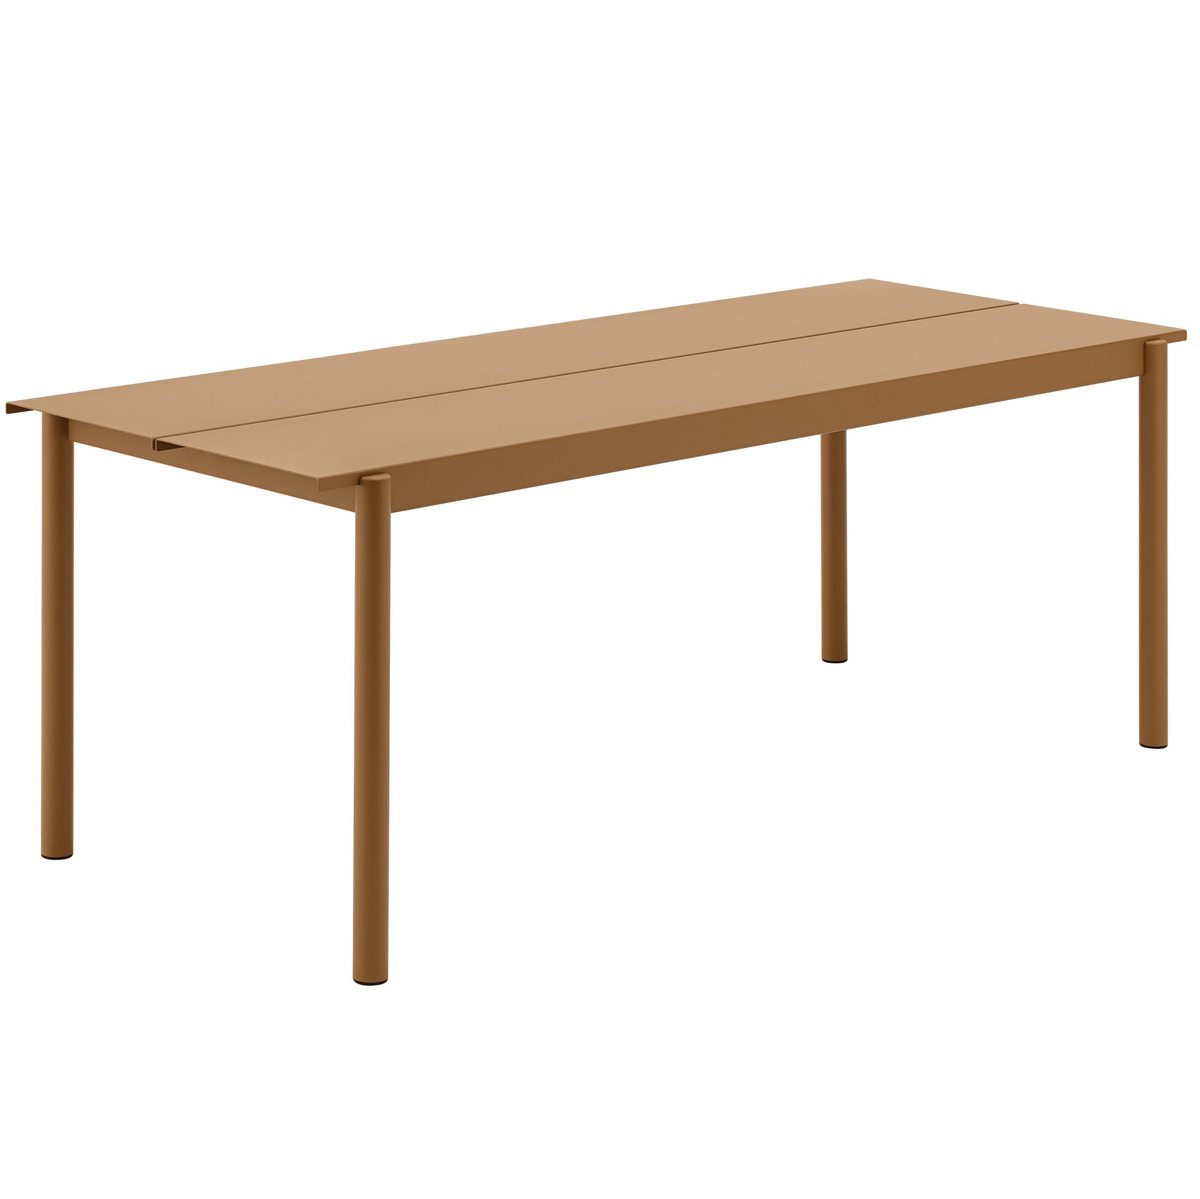 Muuto Linear steel table teräspöytä 200 cm Burnt orange